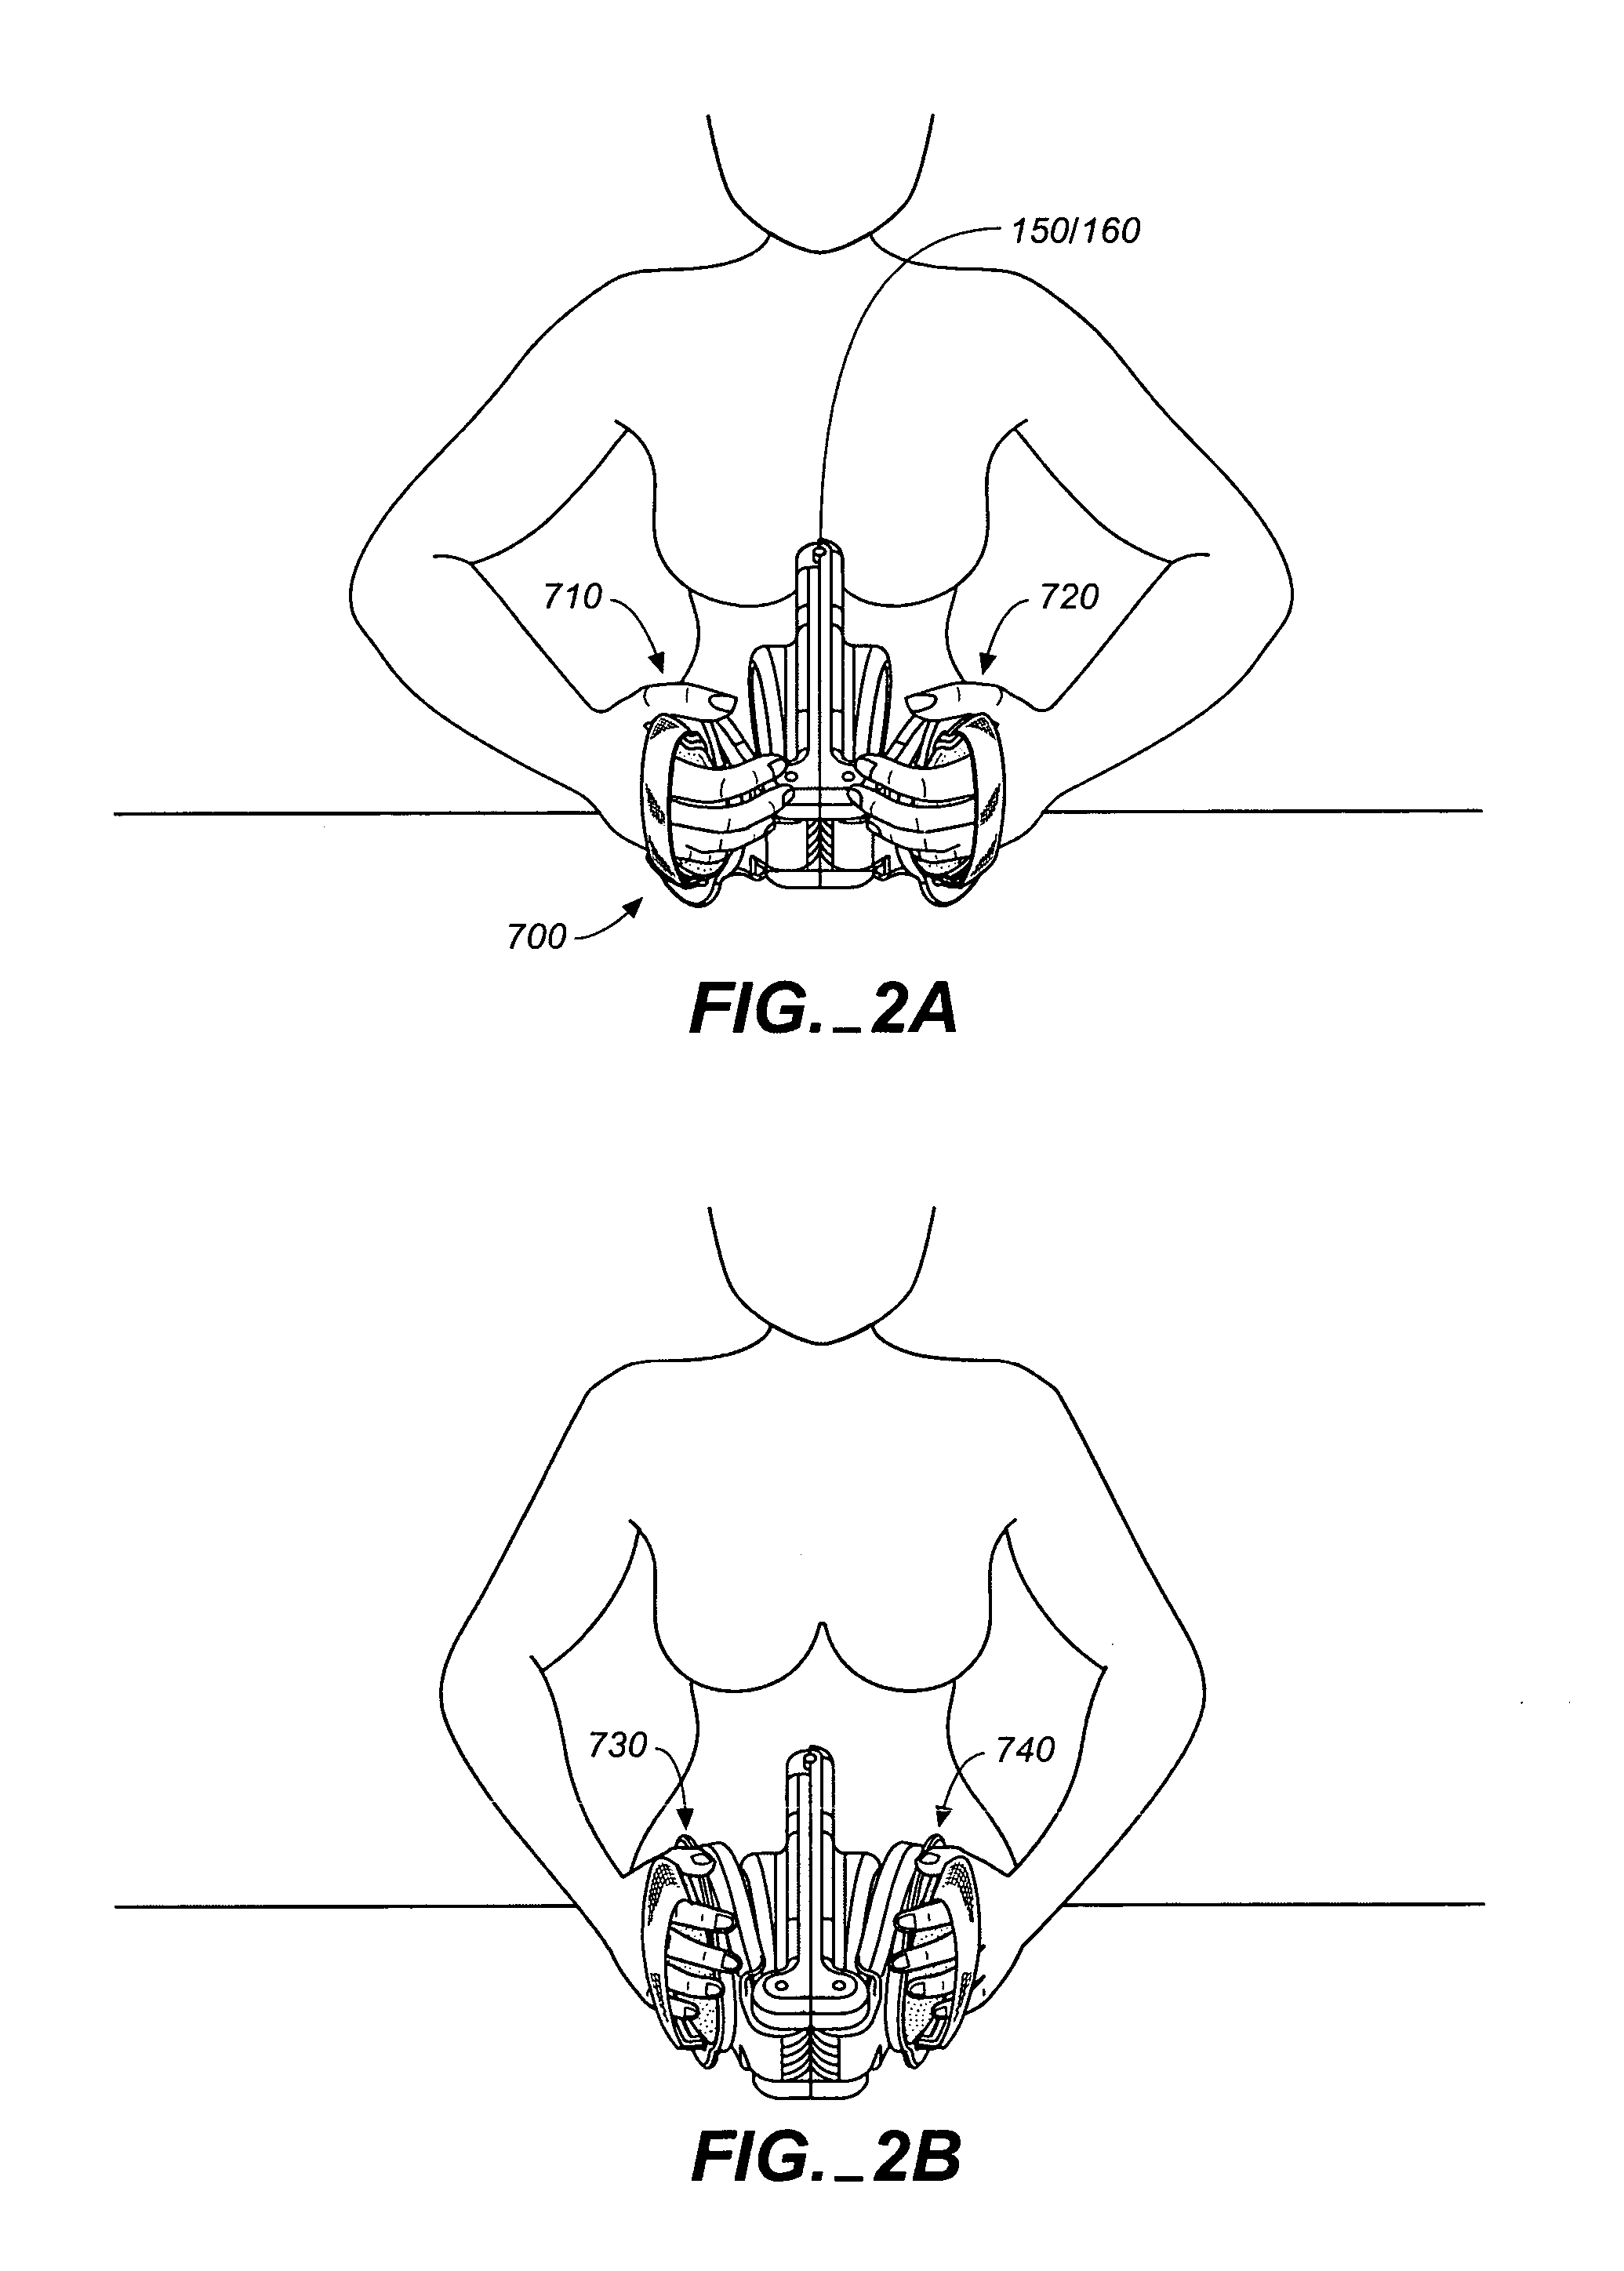 Breast sculpting exercise apparatus